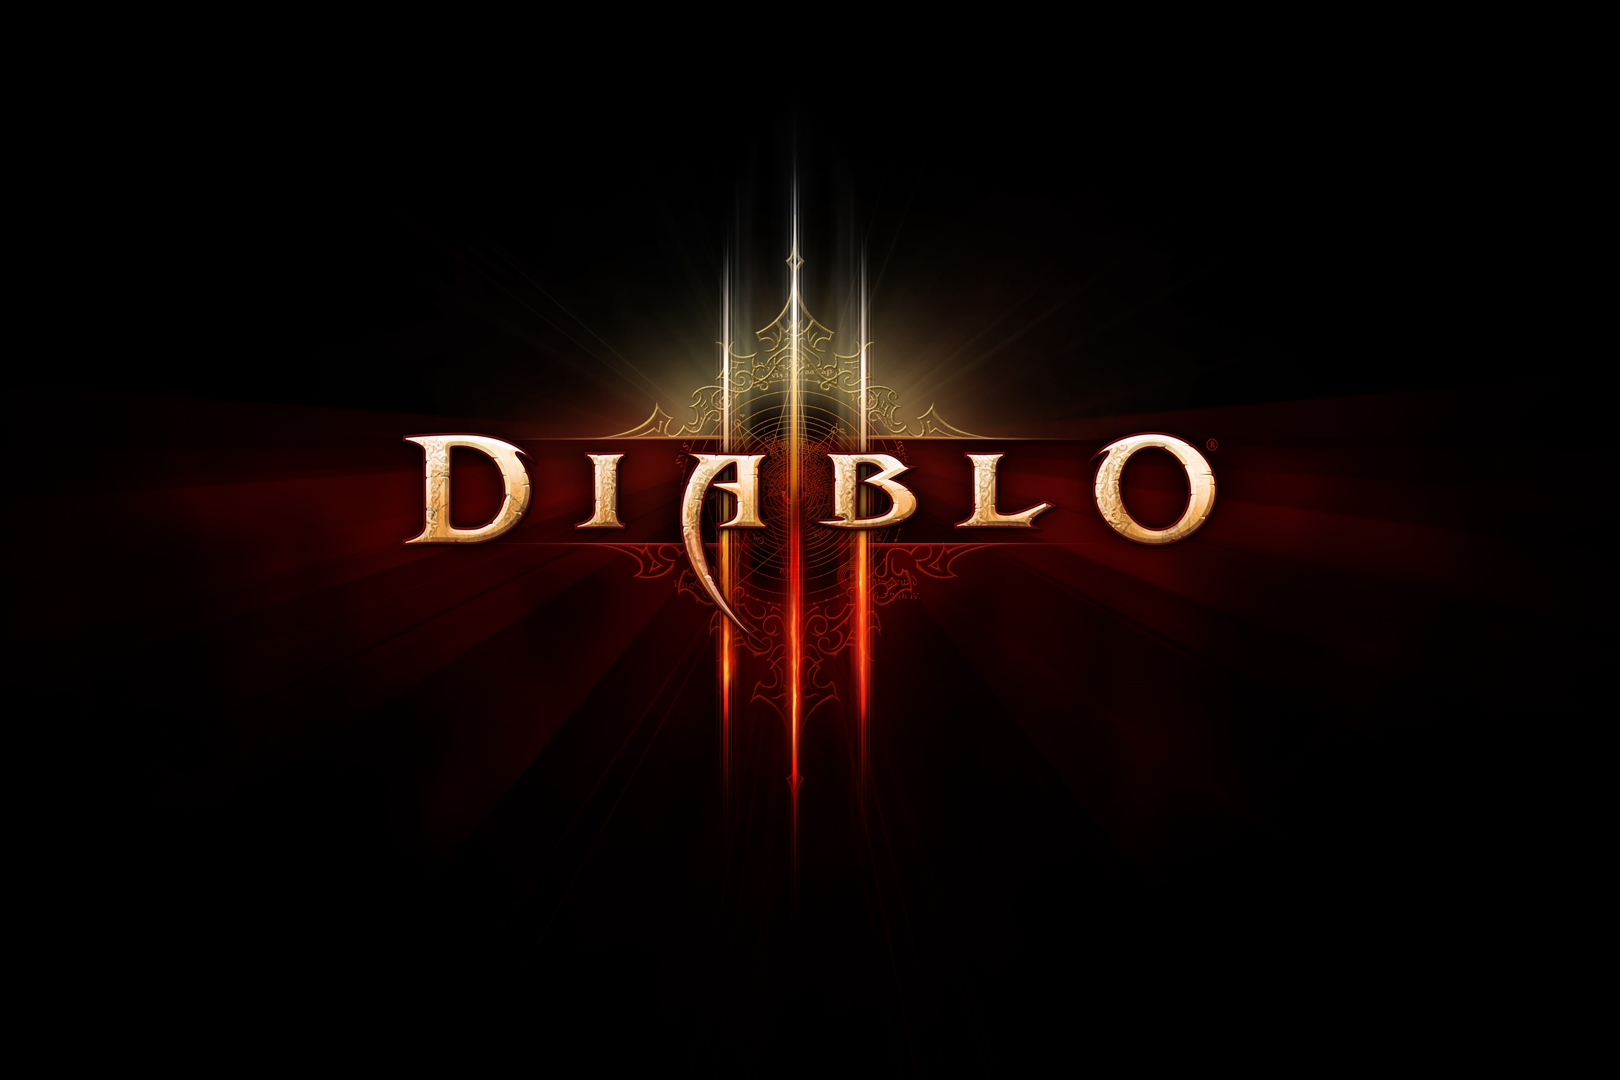 diablo 3 patch 2.5 release date